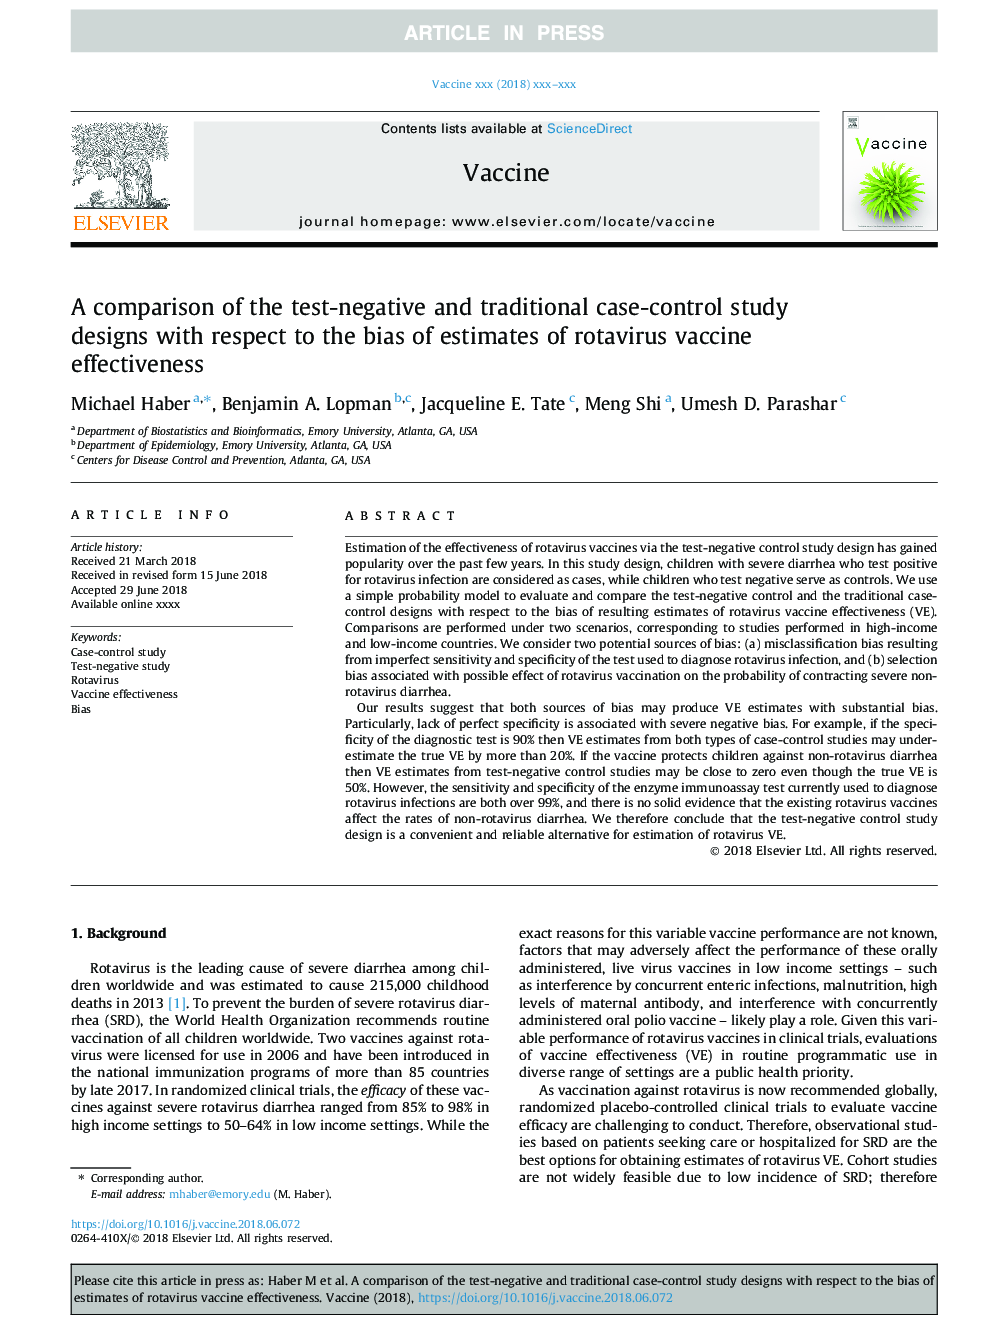 مقایسه طرحهای مطالعاتی مورد-شاهد منفی و سنتی با توجه به برآورد اثرات اثربخشی واکسن روتاویروس 